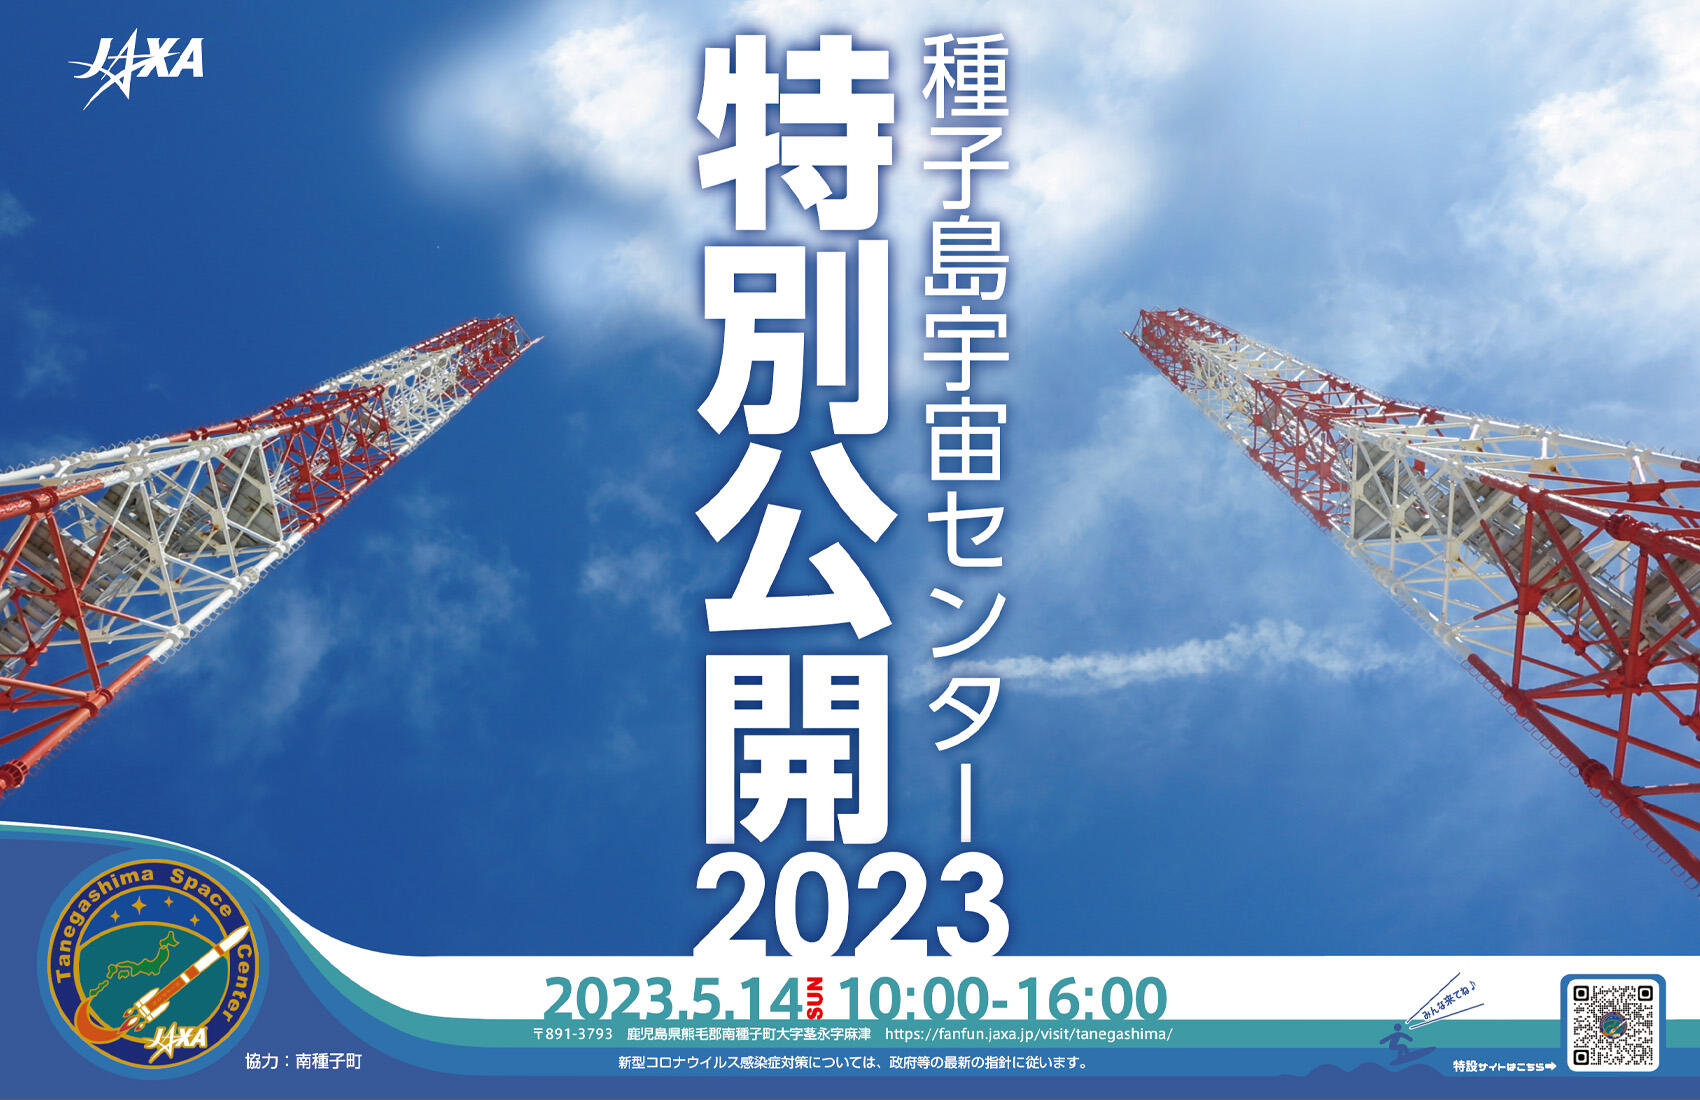 「種子島宇宙センター特別公開2023」特設サイト